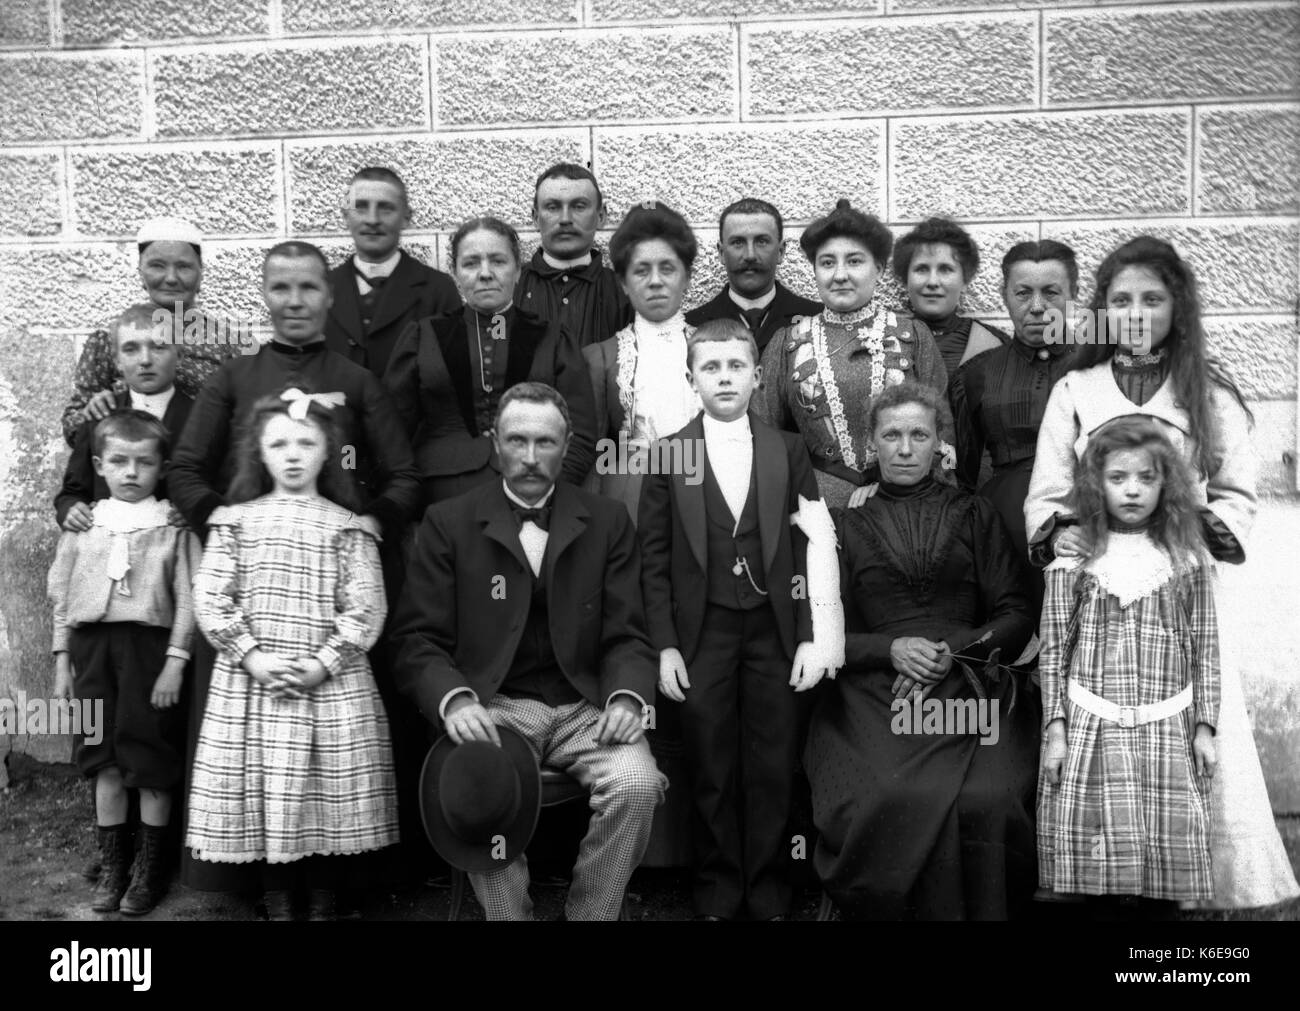 AJAXNETPHOTO. 1891-1910 (environ). SAINT-LO RÉGION, LA NORMANDIE. La France. - Une grande photo de groupe incluant éventuellement une famille et serviteurs. Photographe:Inconnu © COPYRIGHT DE L'IMAGE NUMÉRIQUE PHOTO VINTAGE AJAX AJAX BIBLIOTHÈQUE SOURCE : VINTAGE PHOTO LIBRARY COLLECTION REF:AVL   1890 11 FRA Banque D'Images